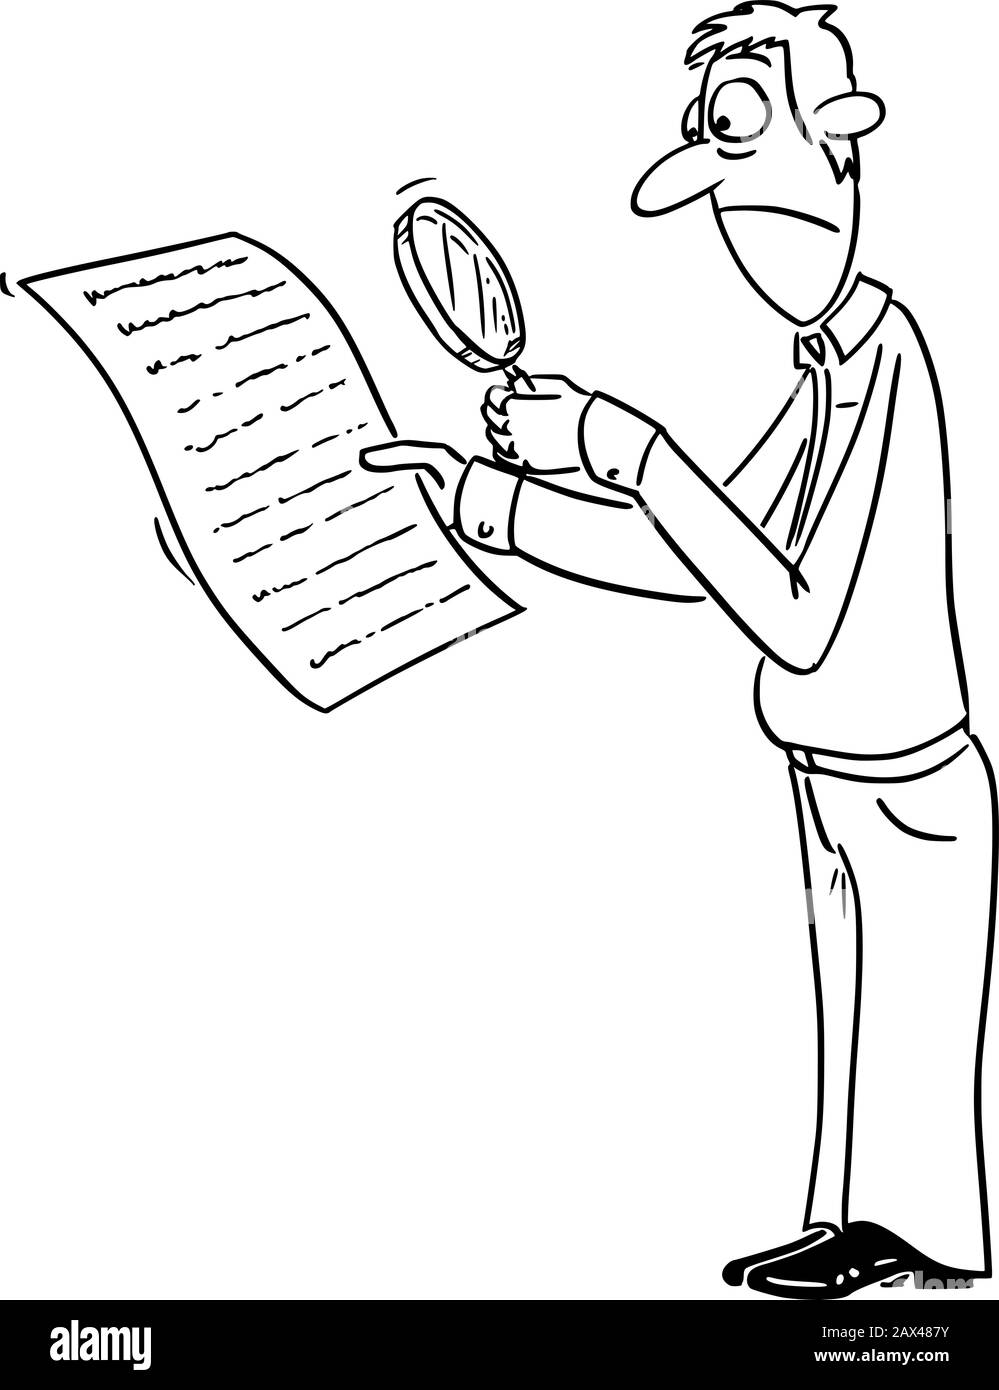 Vector lustige Comic-Cartoon-Zeichnung von umgekipptem Mann oder Geschäftsmann Lesen Vertrag oder Dokument, mit Lupe Glas, um etwas in kleinen Text oder Schrift versteckt zu finden. Stock Vektor